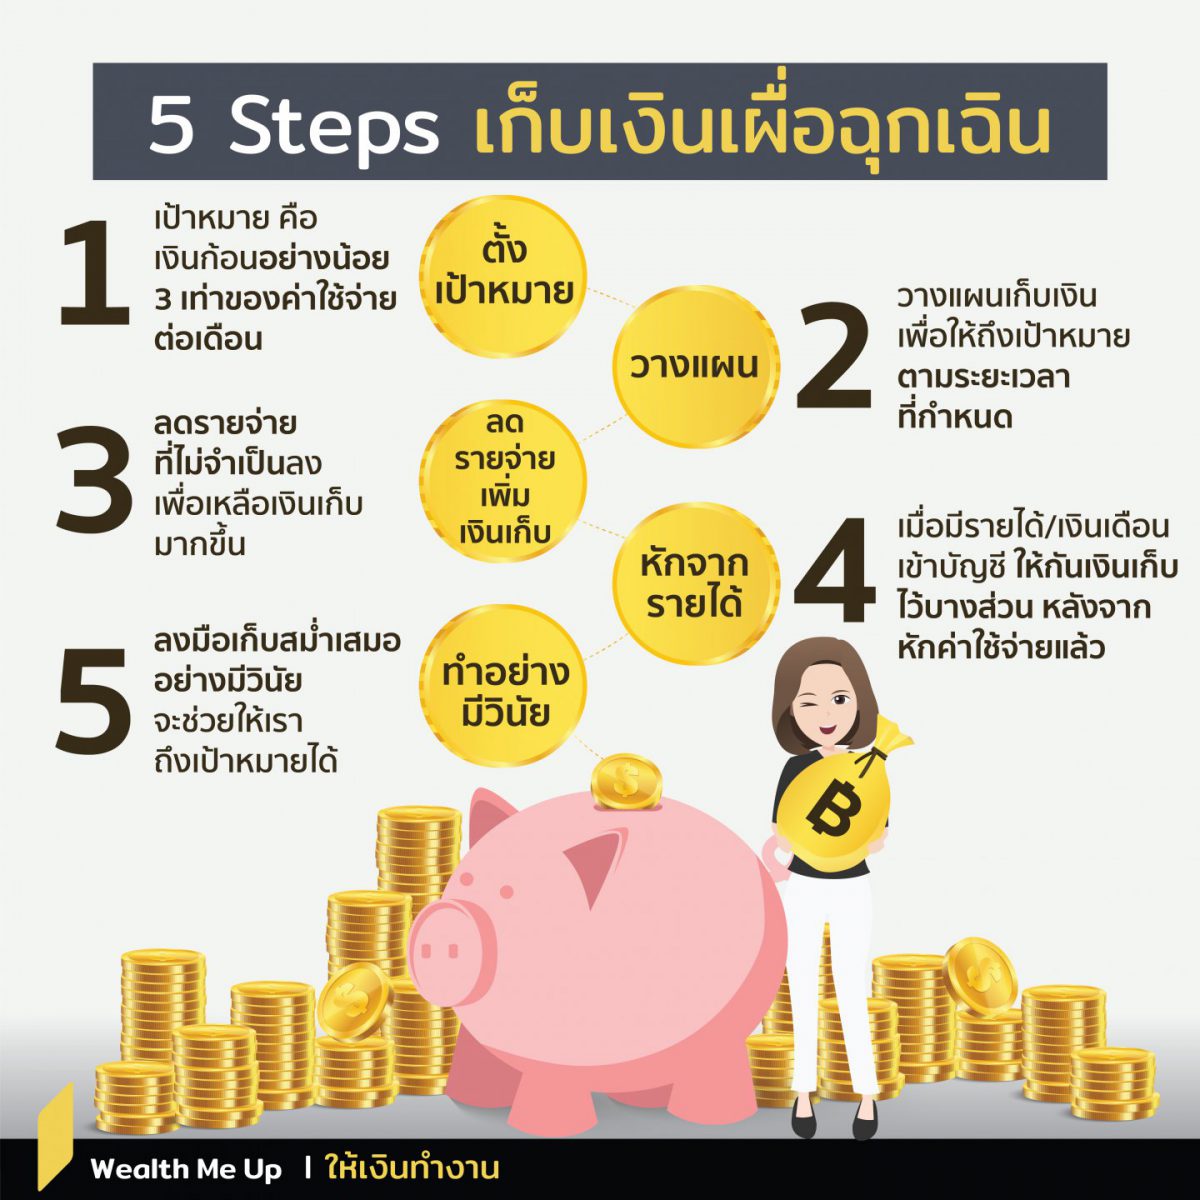 5 Steps เก็บเงินเผื่อฉุกเฉิน - Wealth Me Up